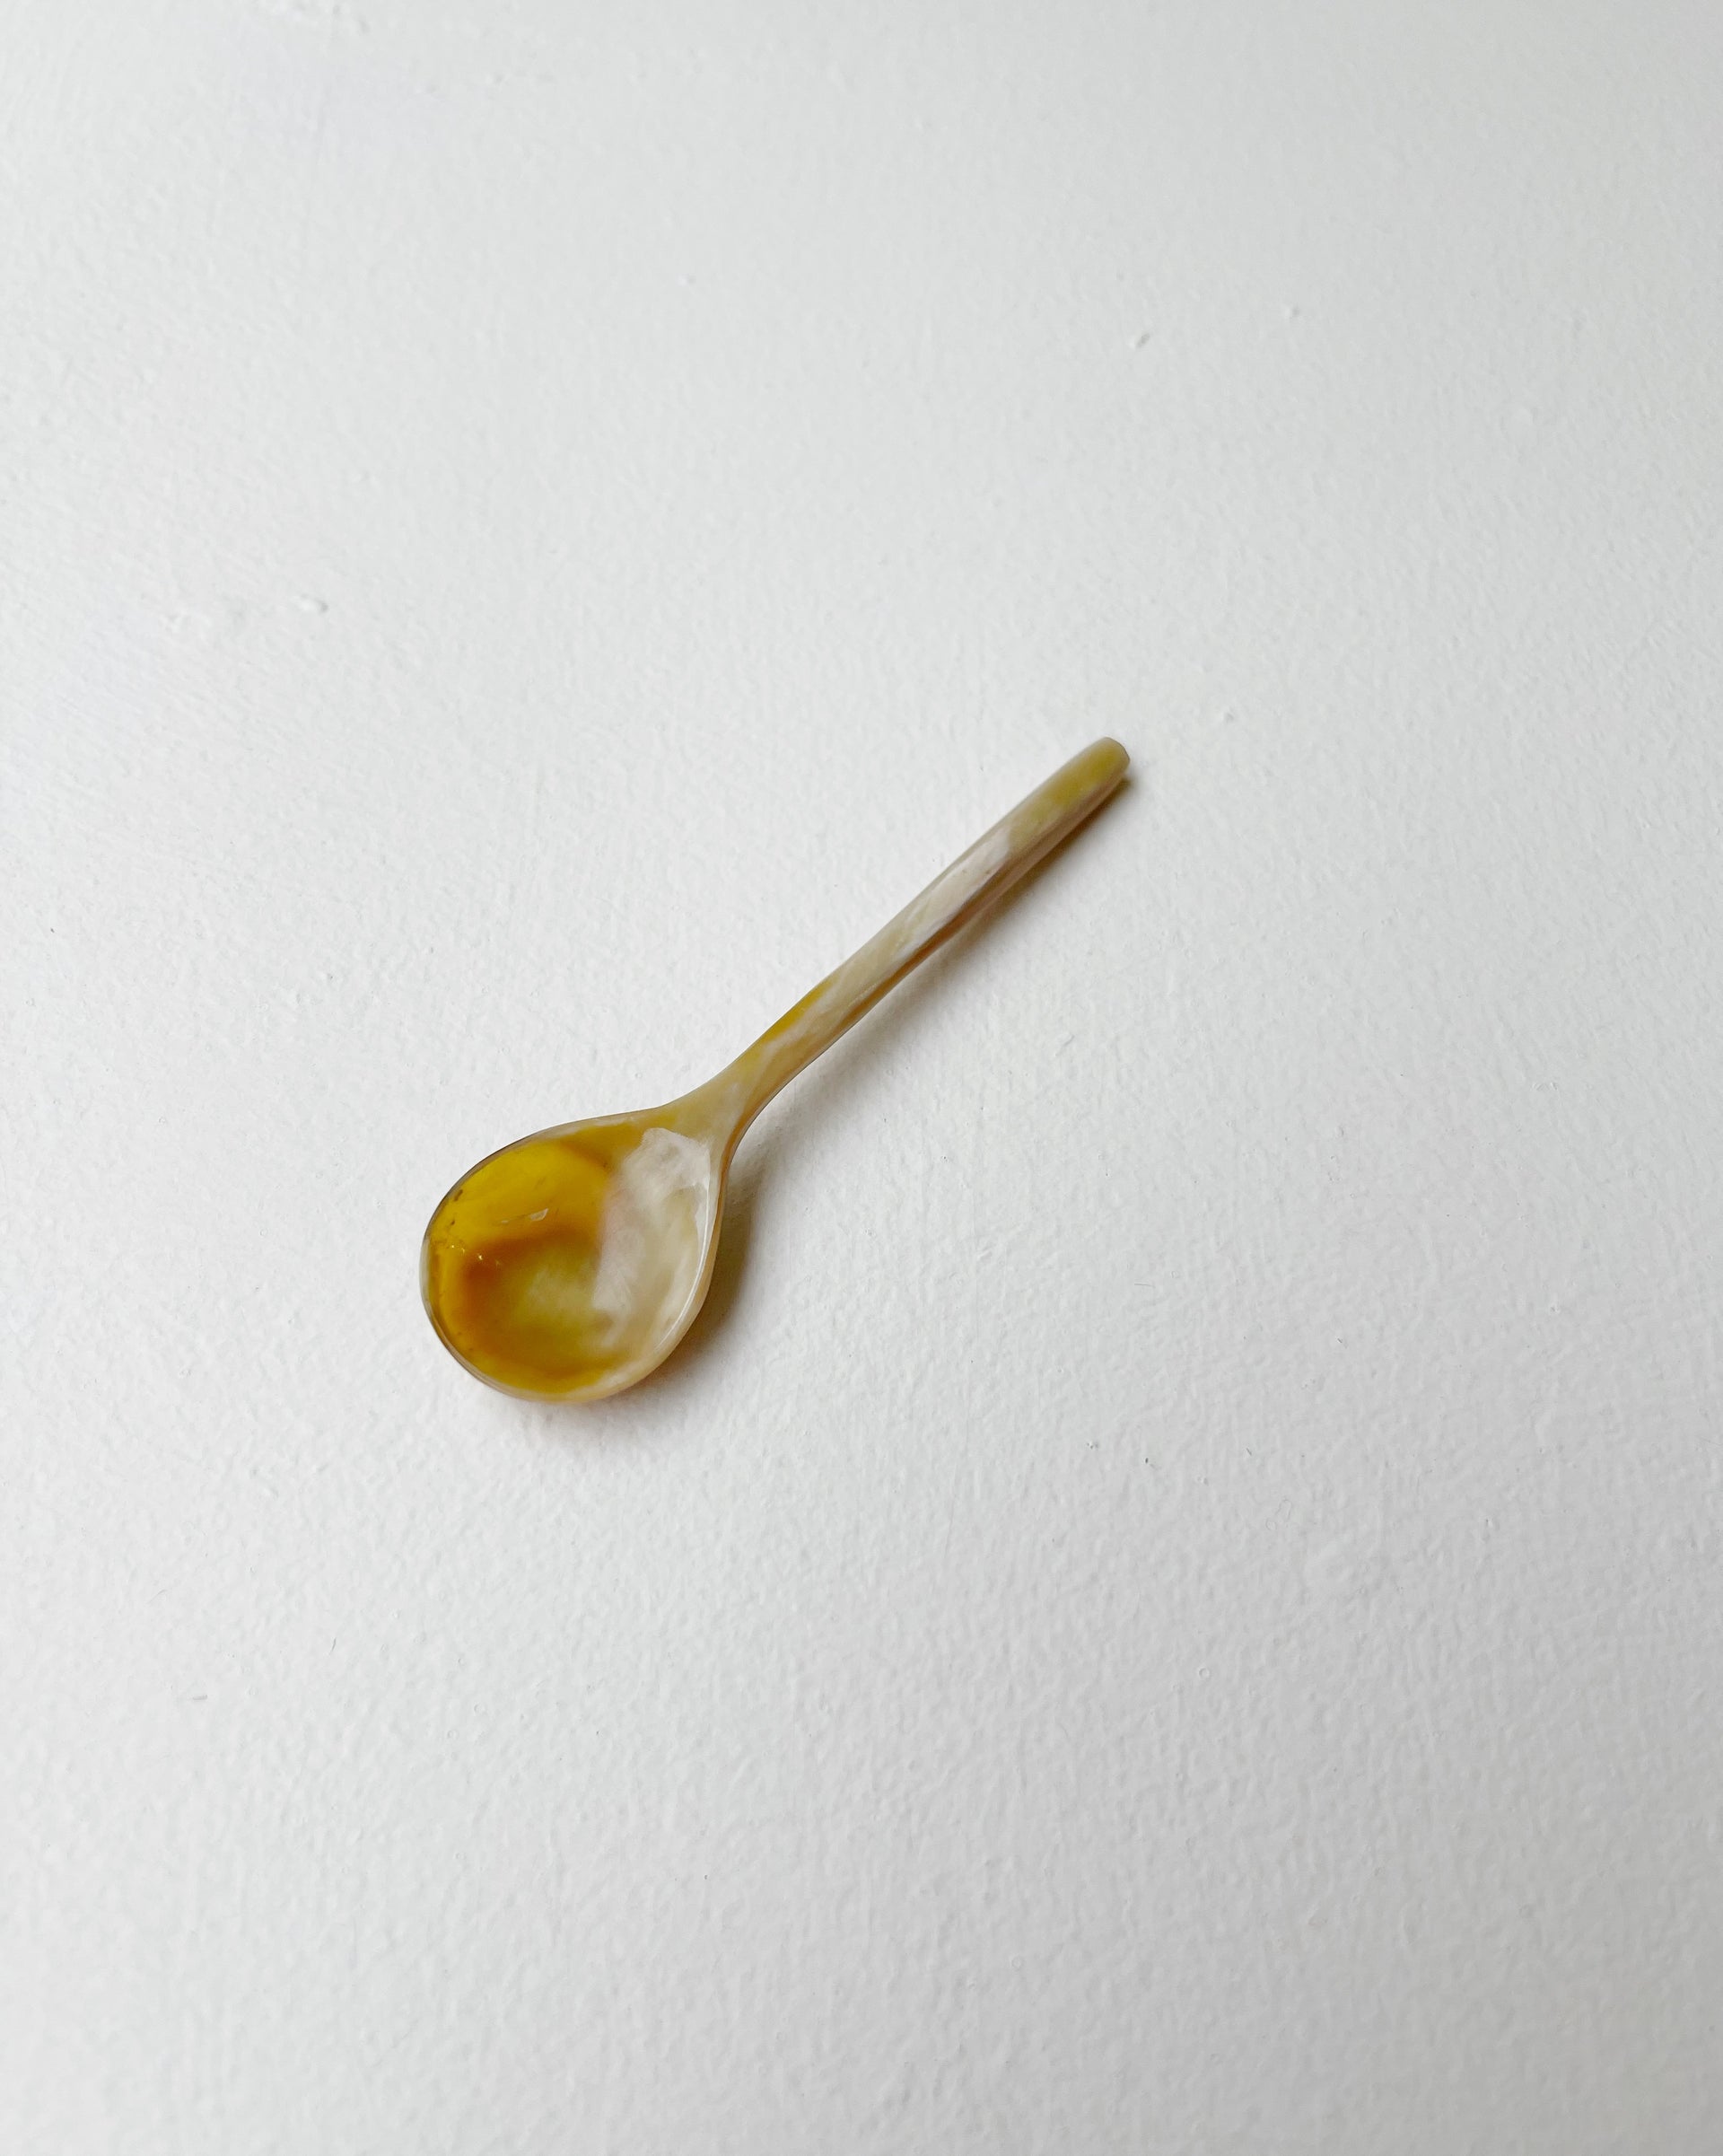 Yogurt Spoon